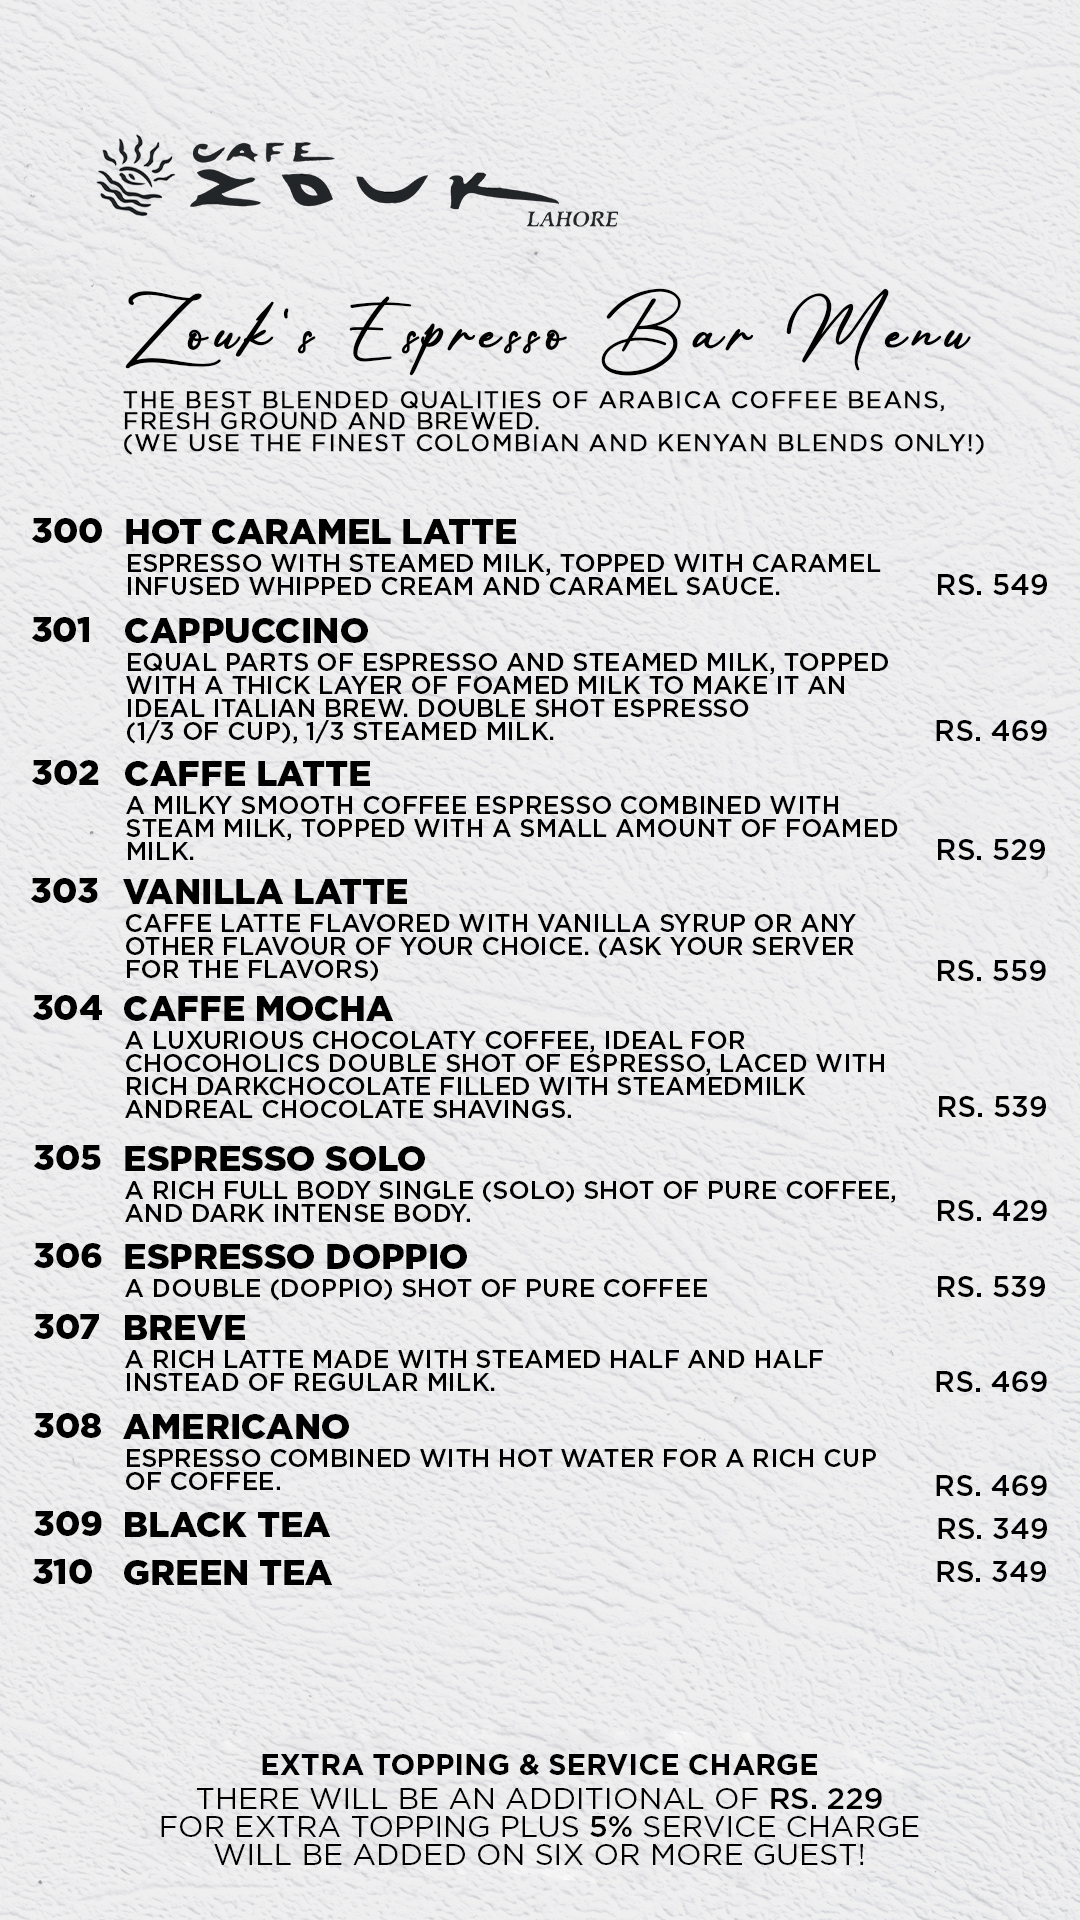 cafe zouk lahore restaurant menu page 32